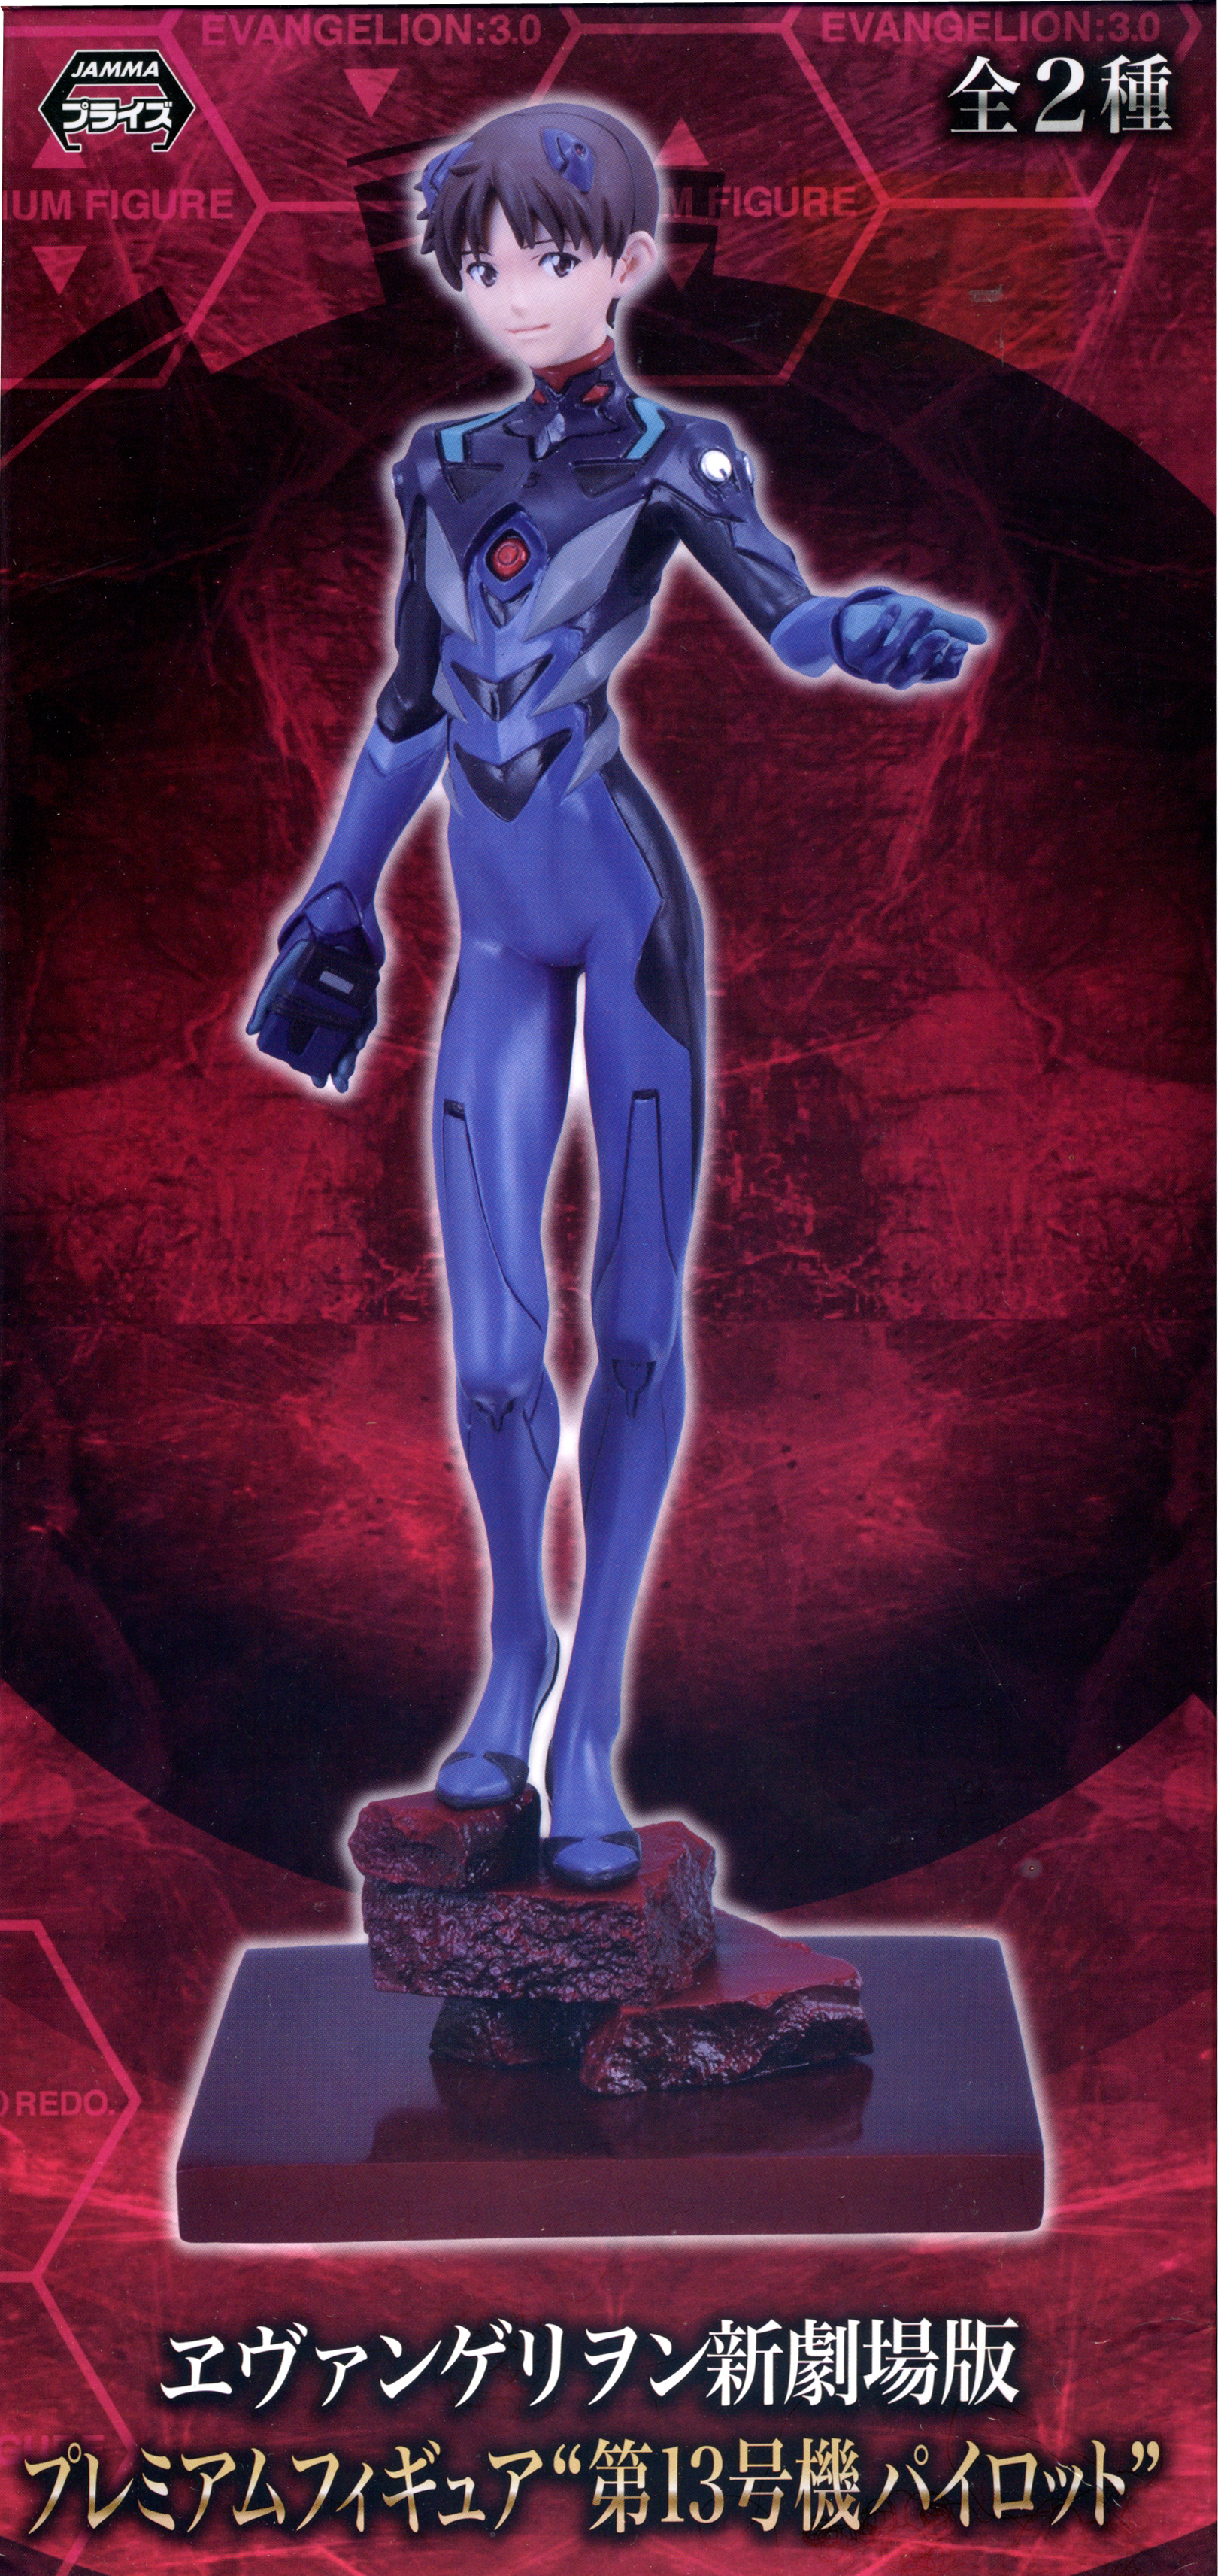 Shinji Ikari, Premium Figure No. 13 Machine Outdoor, Evangelion 3.0, You Can (Not) Redo, Sega